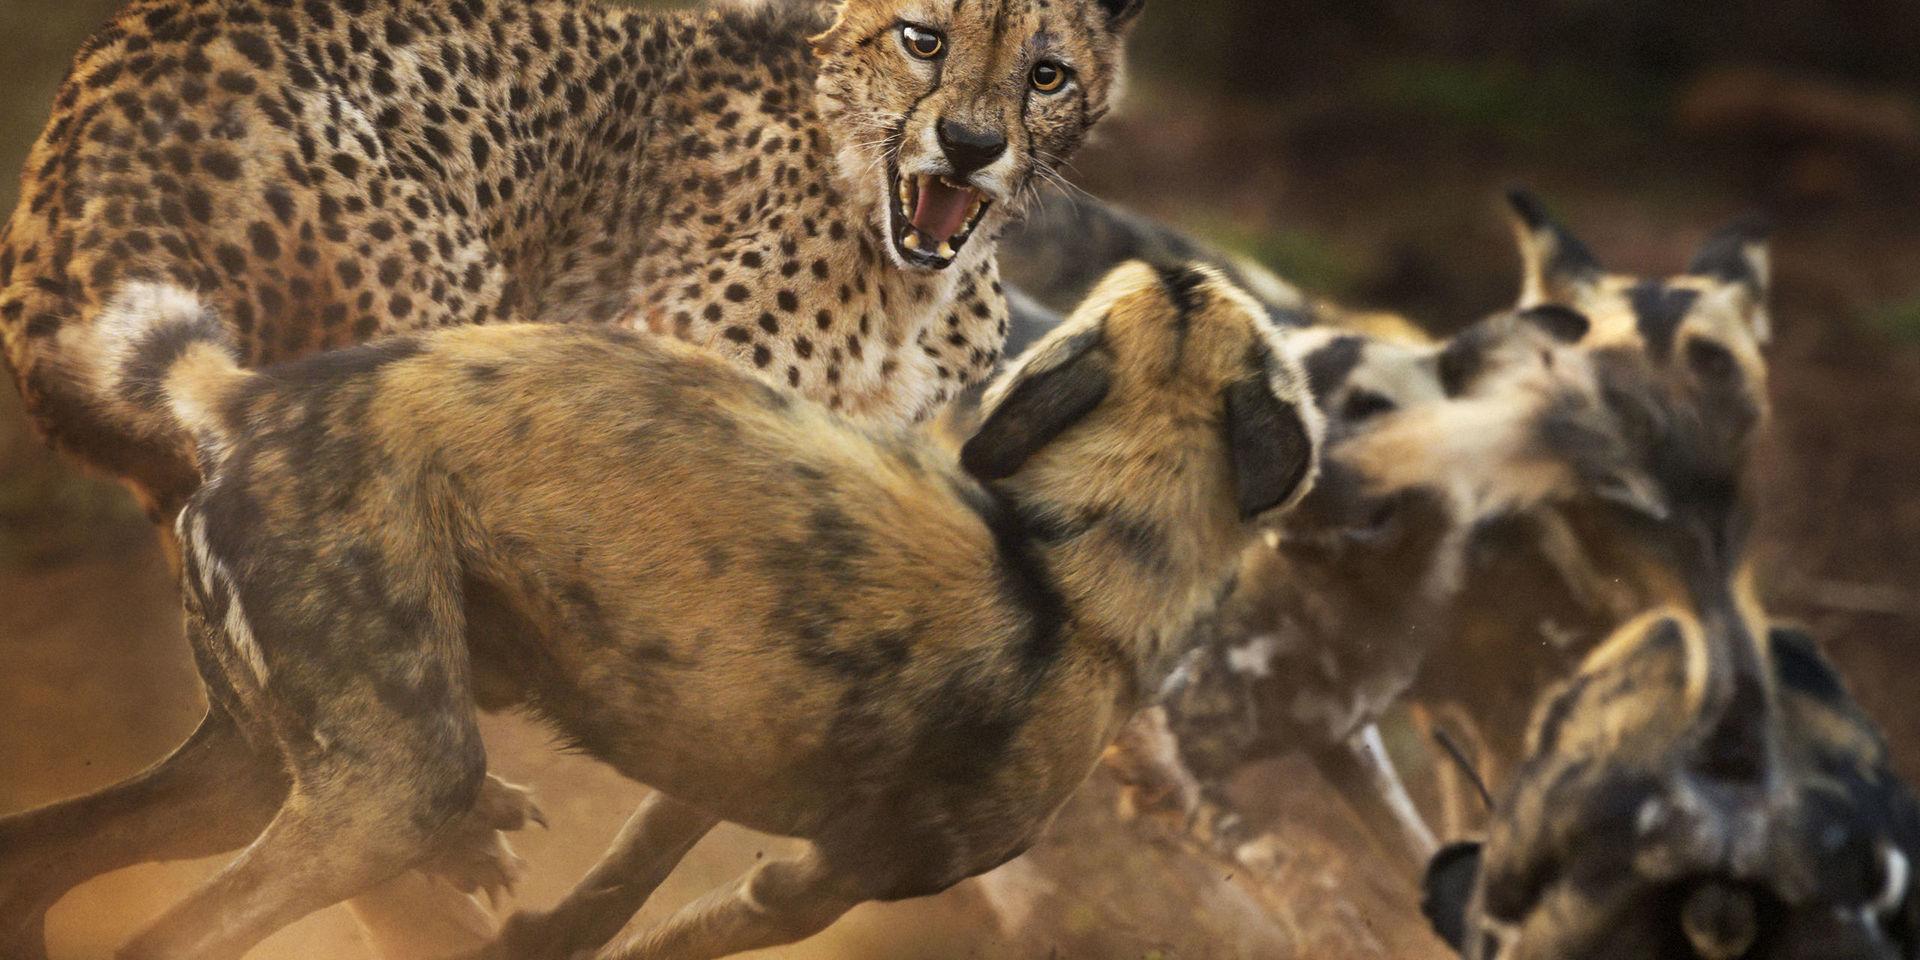 Som katt och hund. En gepard och afrikanska vildhundar i vilt slagsmål i Zimanga Private Game Reserve i Sydafrika. Ett vildsvin hade precis lyckats undkomma den tolv djur stora hundflocken när några i flocken råkade stöta på en gepard. I takt med att allt fler hundar anlände växte deras självförtroende, varpå de började omringa geparden som gjorde hätska utfall. Geparden lyckades till slut smita undan, med endast lättare blessyrer som följd. 